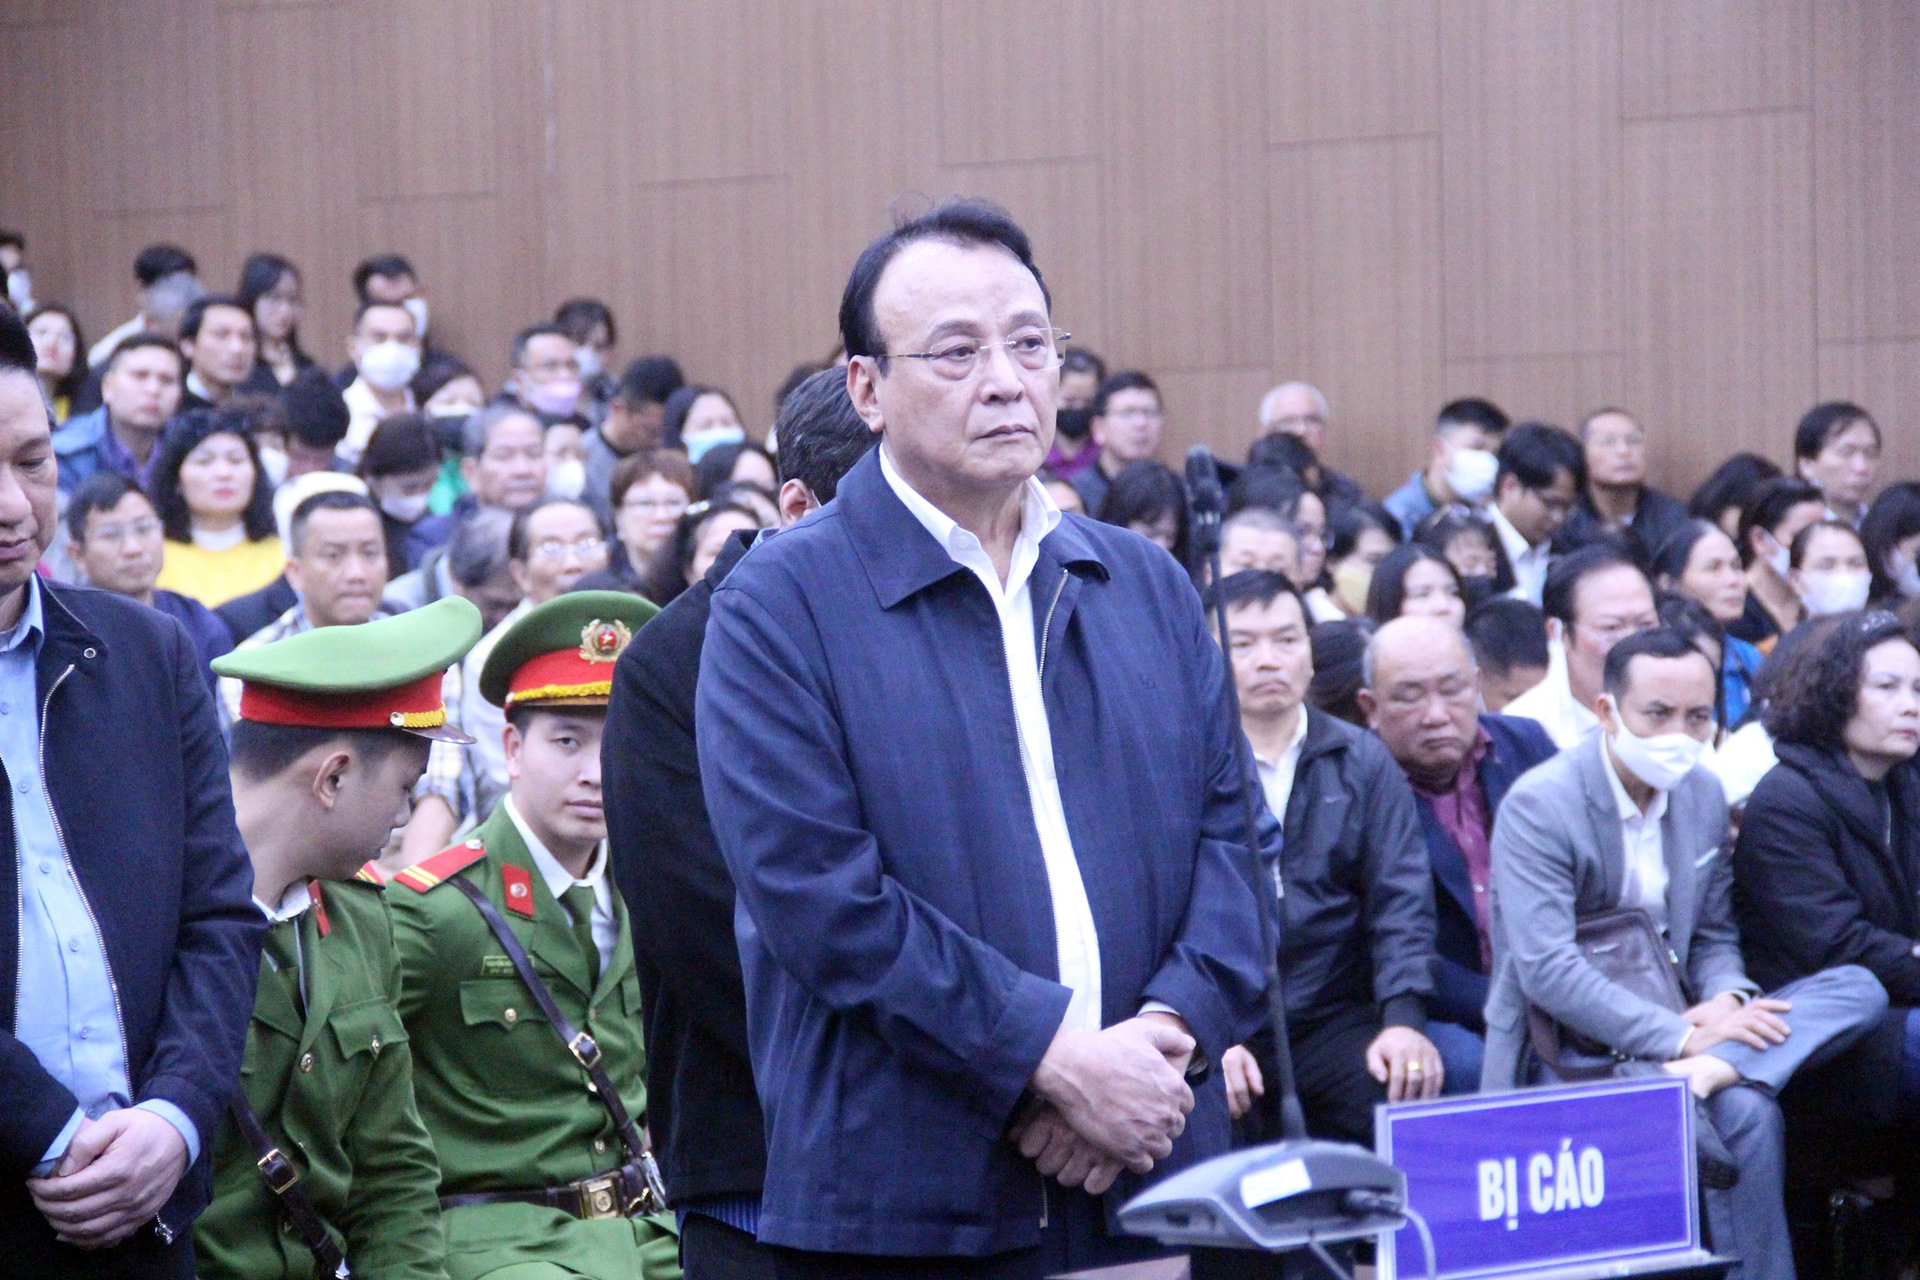 Chủ tịch Tân Hoàng Minh khắc phục toàn bộ hậu quả vụ án, còn thừa 1 tỷ- Ảnh 1.